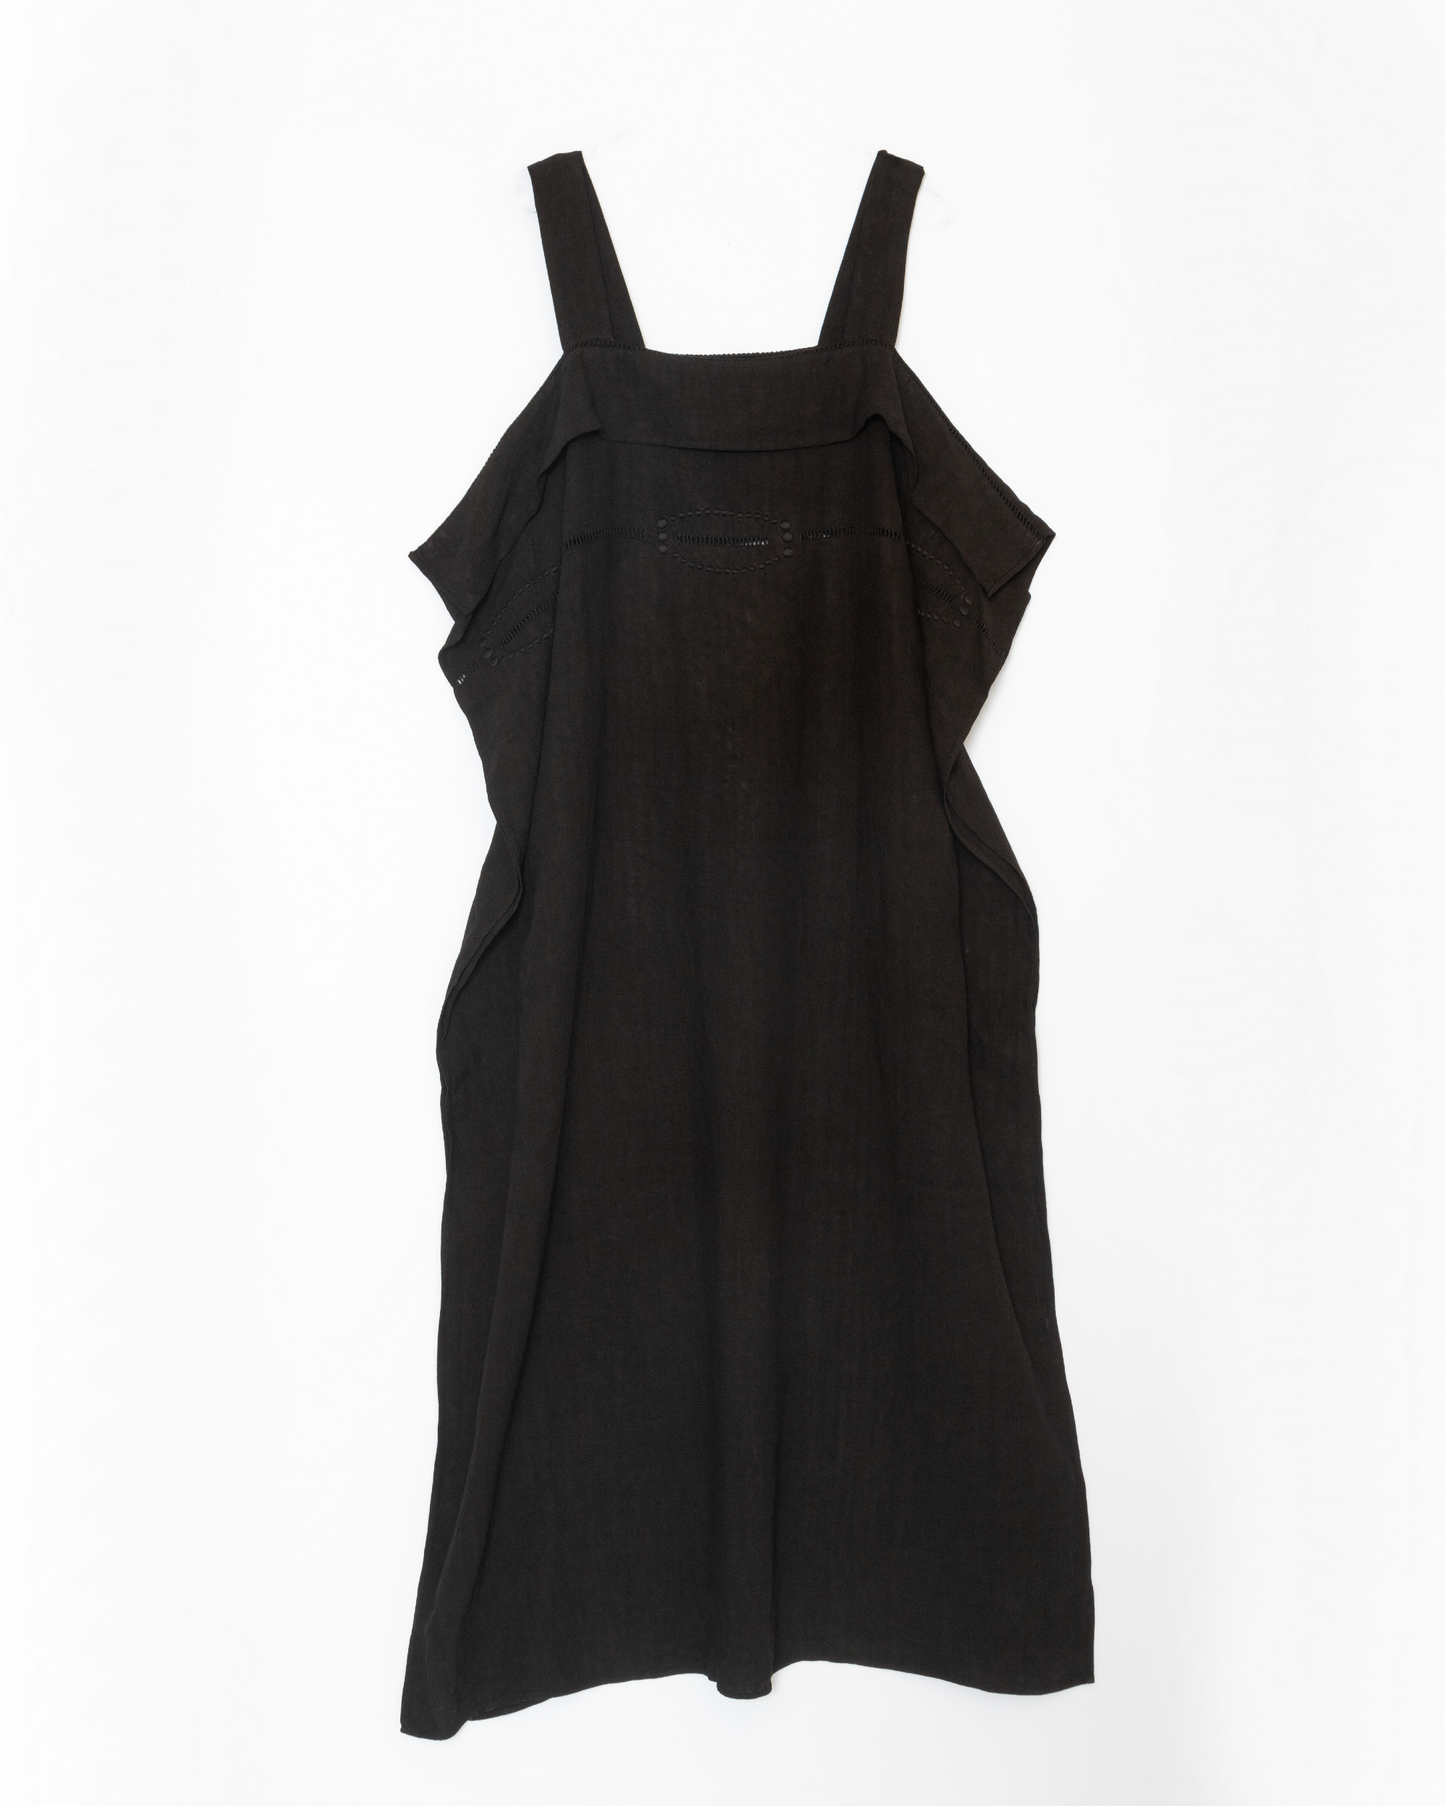 [Whiteread] Dress 14 - Ebony Linen 